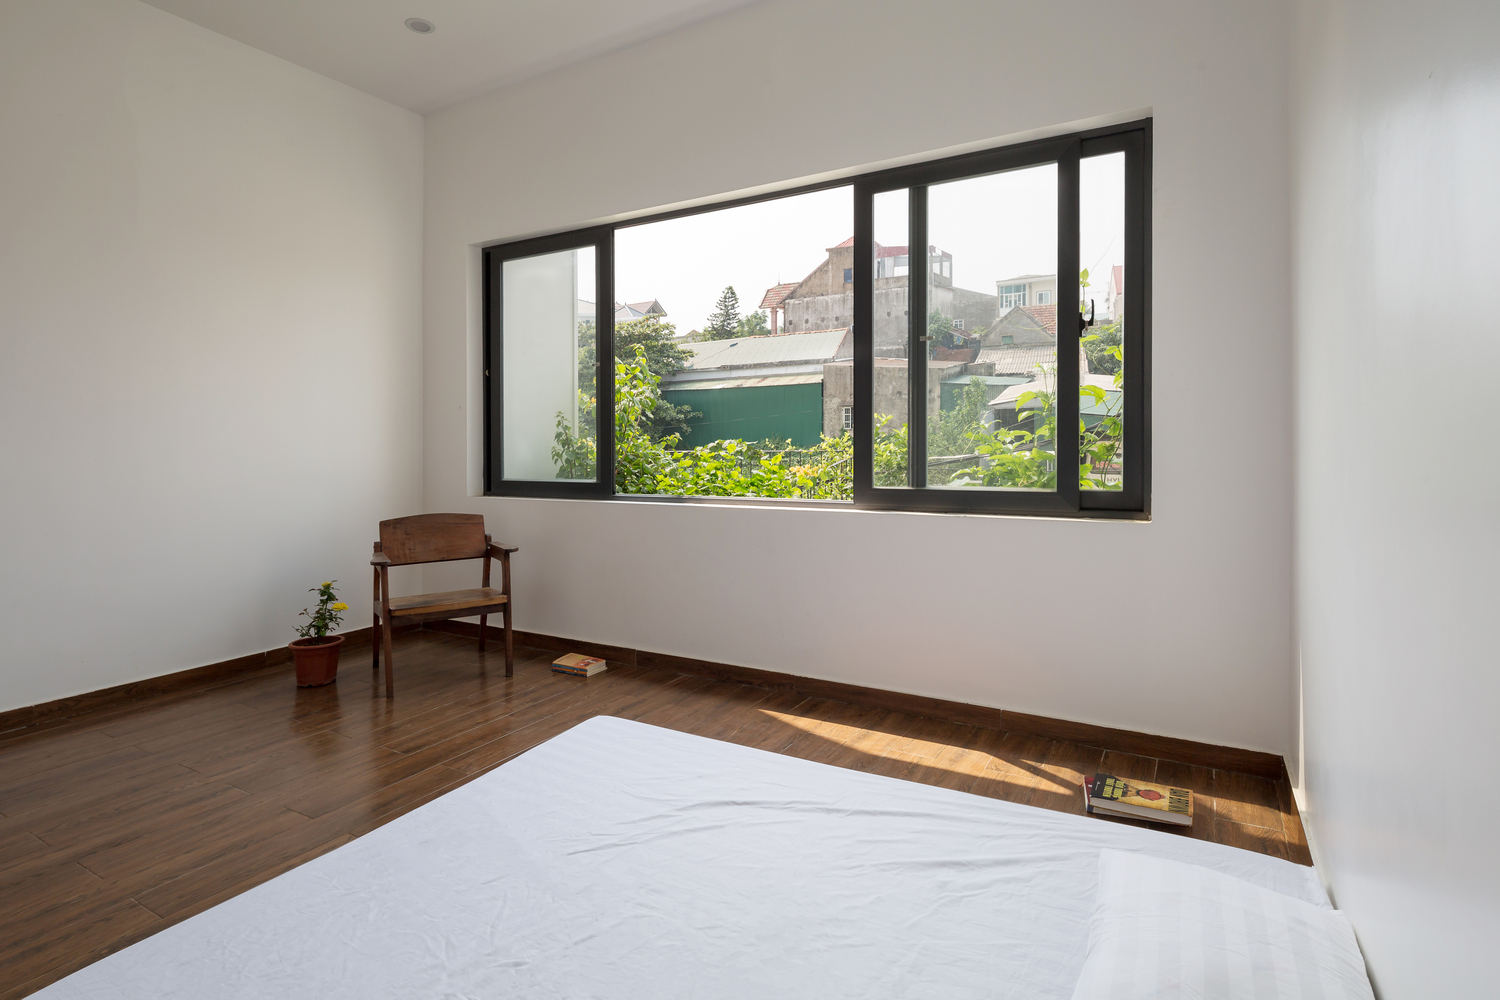 Hình ảnh phòng ngủ với ga gối màu trắng, sàn gỗ, ghế ngồi thư giãn, cửa sổ kính lớn